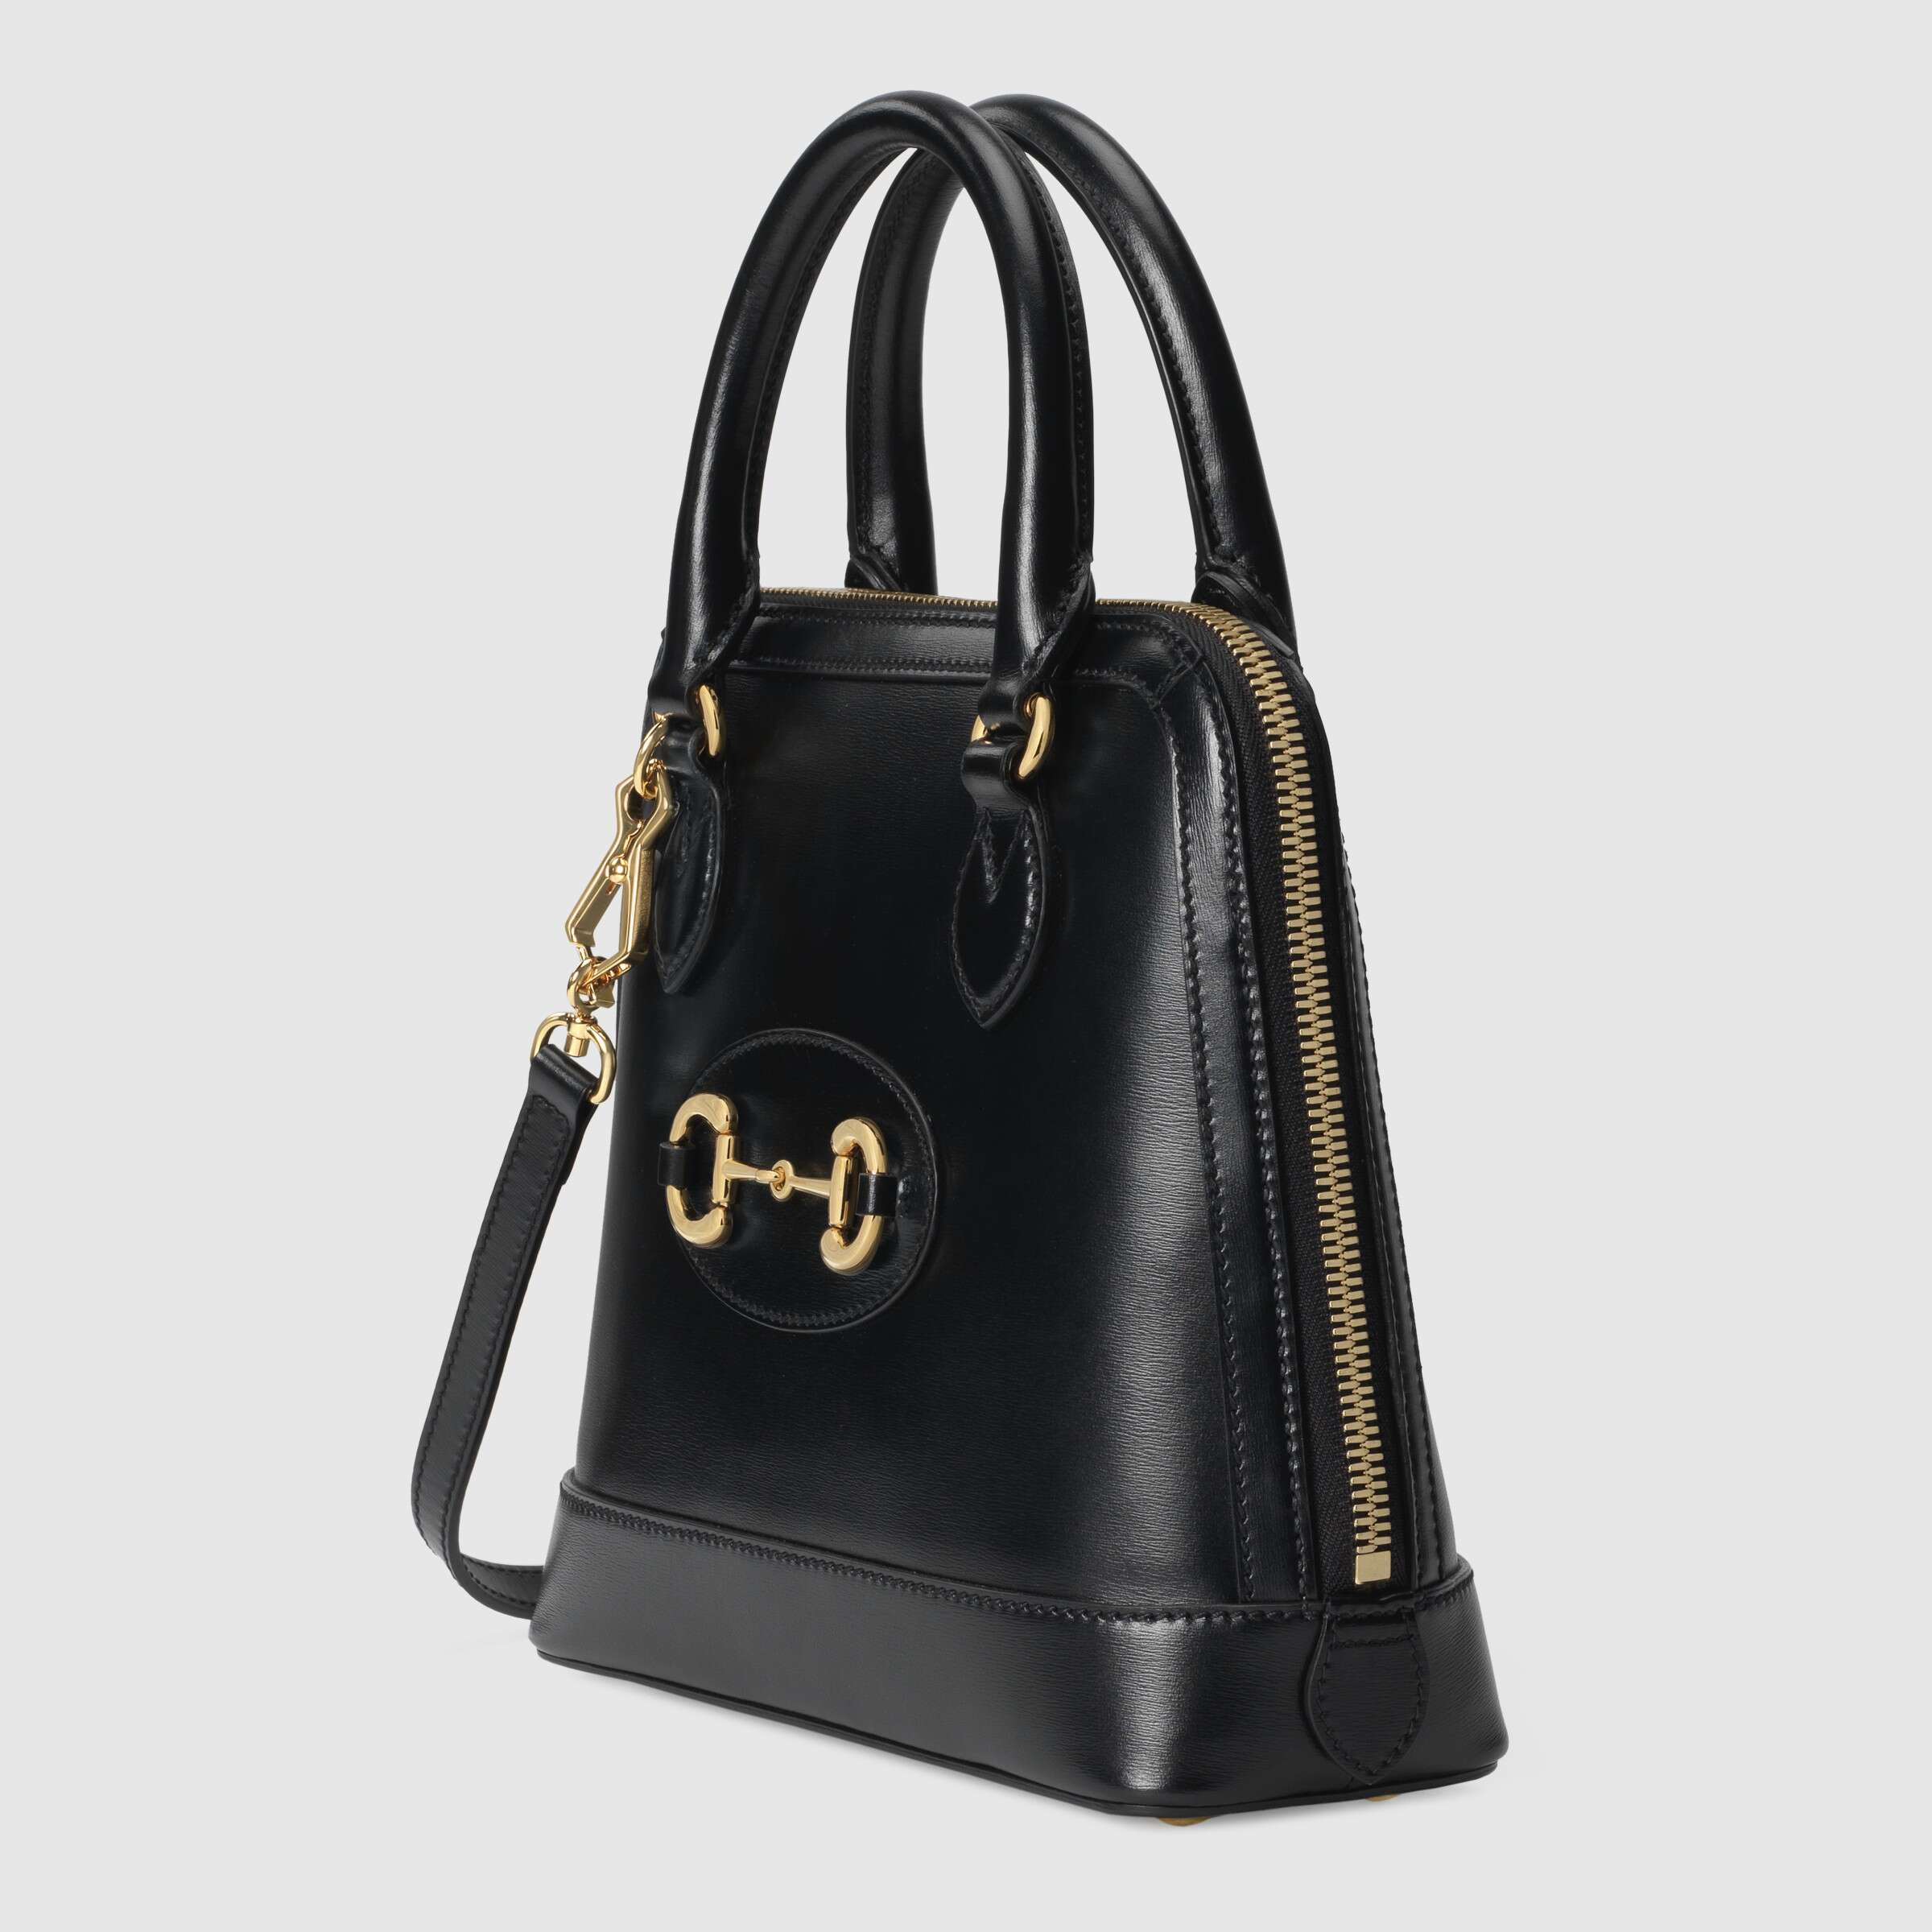 Gucci 1955 Horsebit Small Top Handle Bag Black